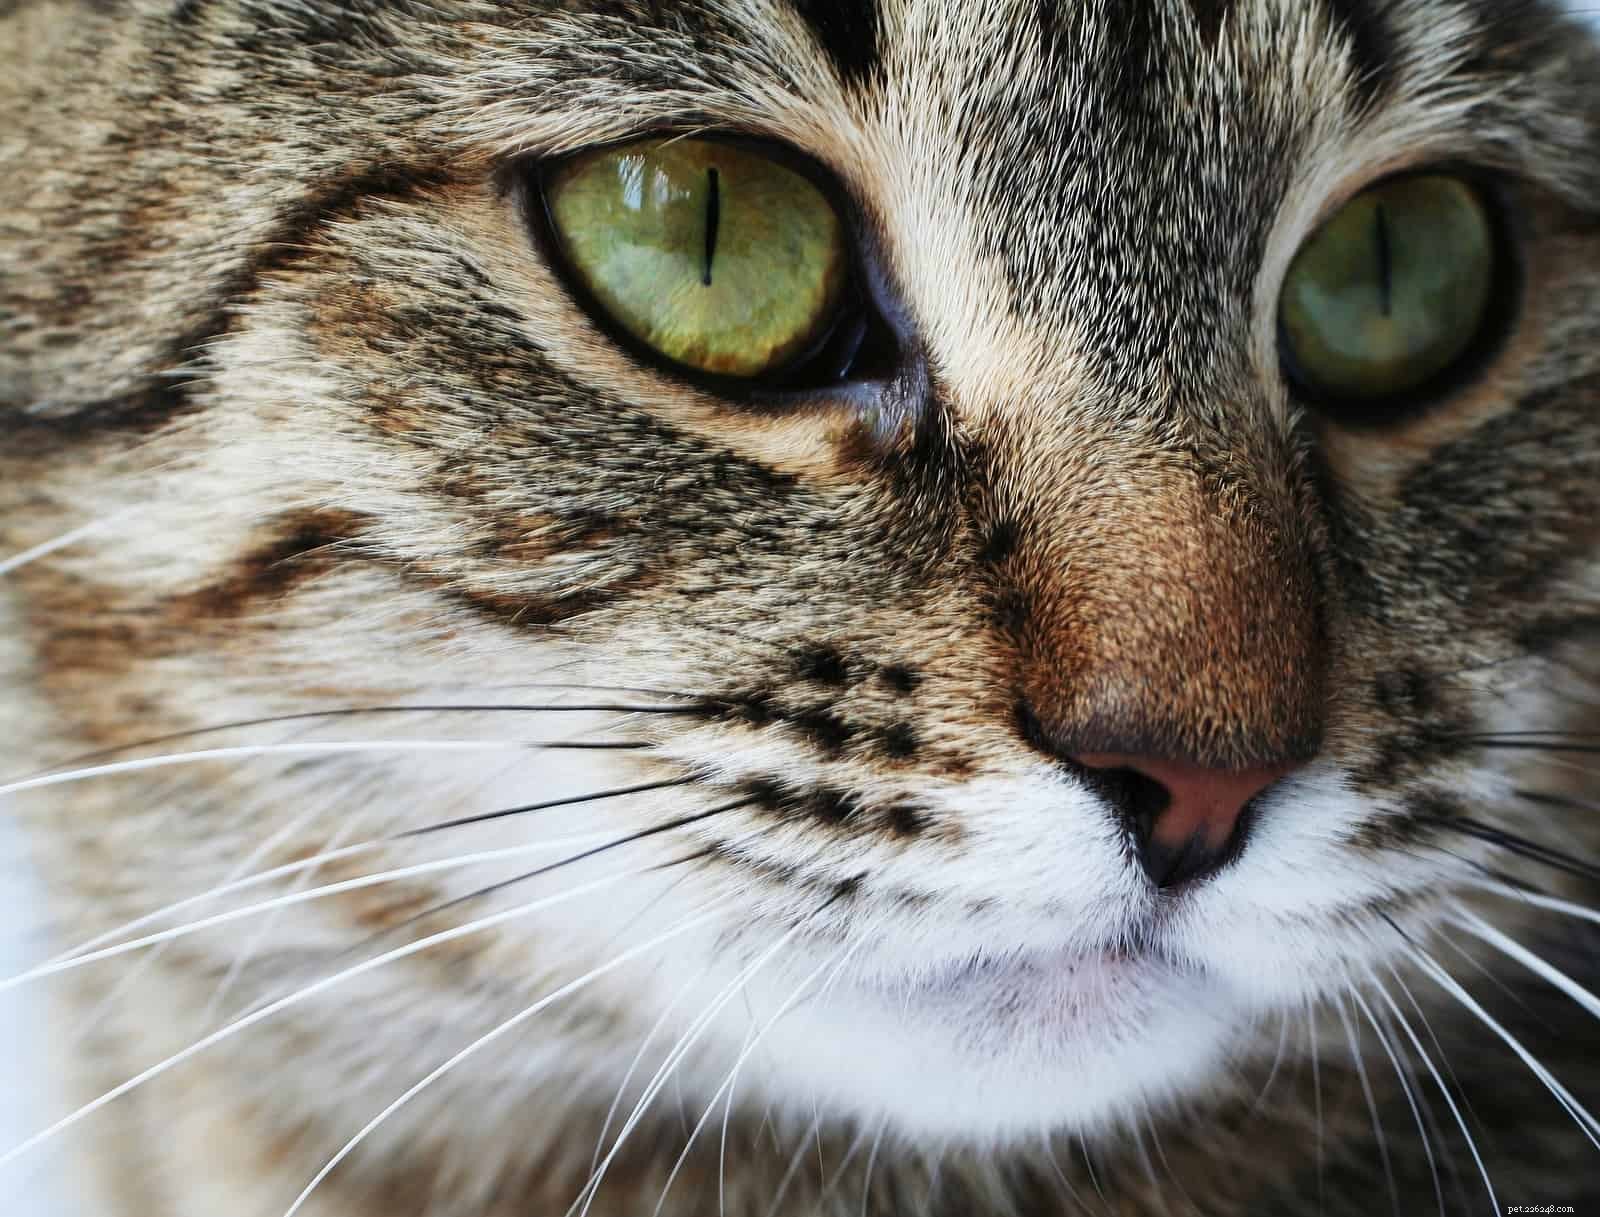 Interessante feiten over de snorharen van uw kat